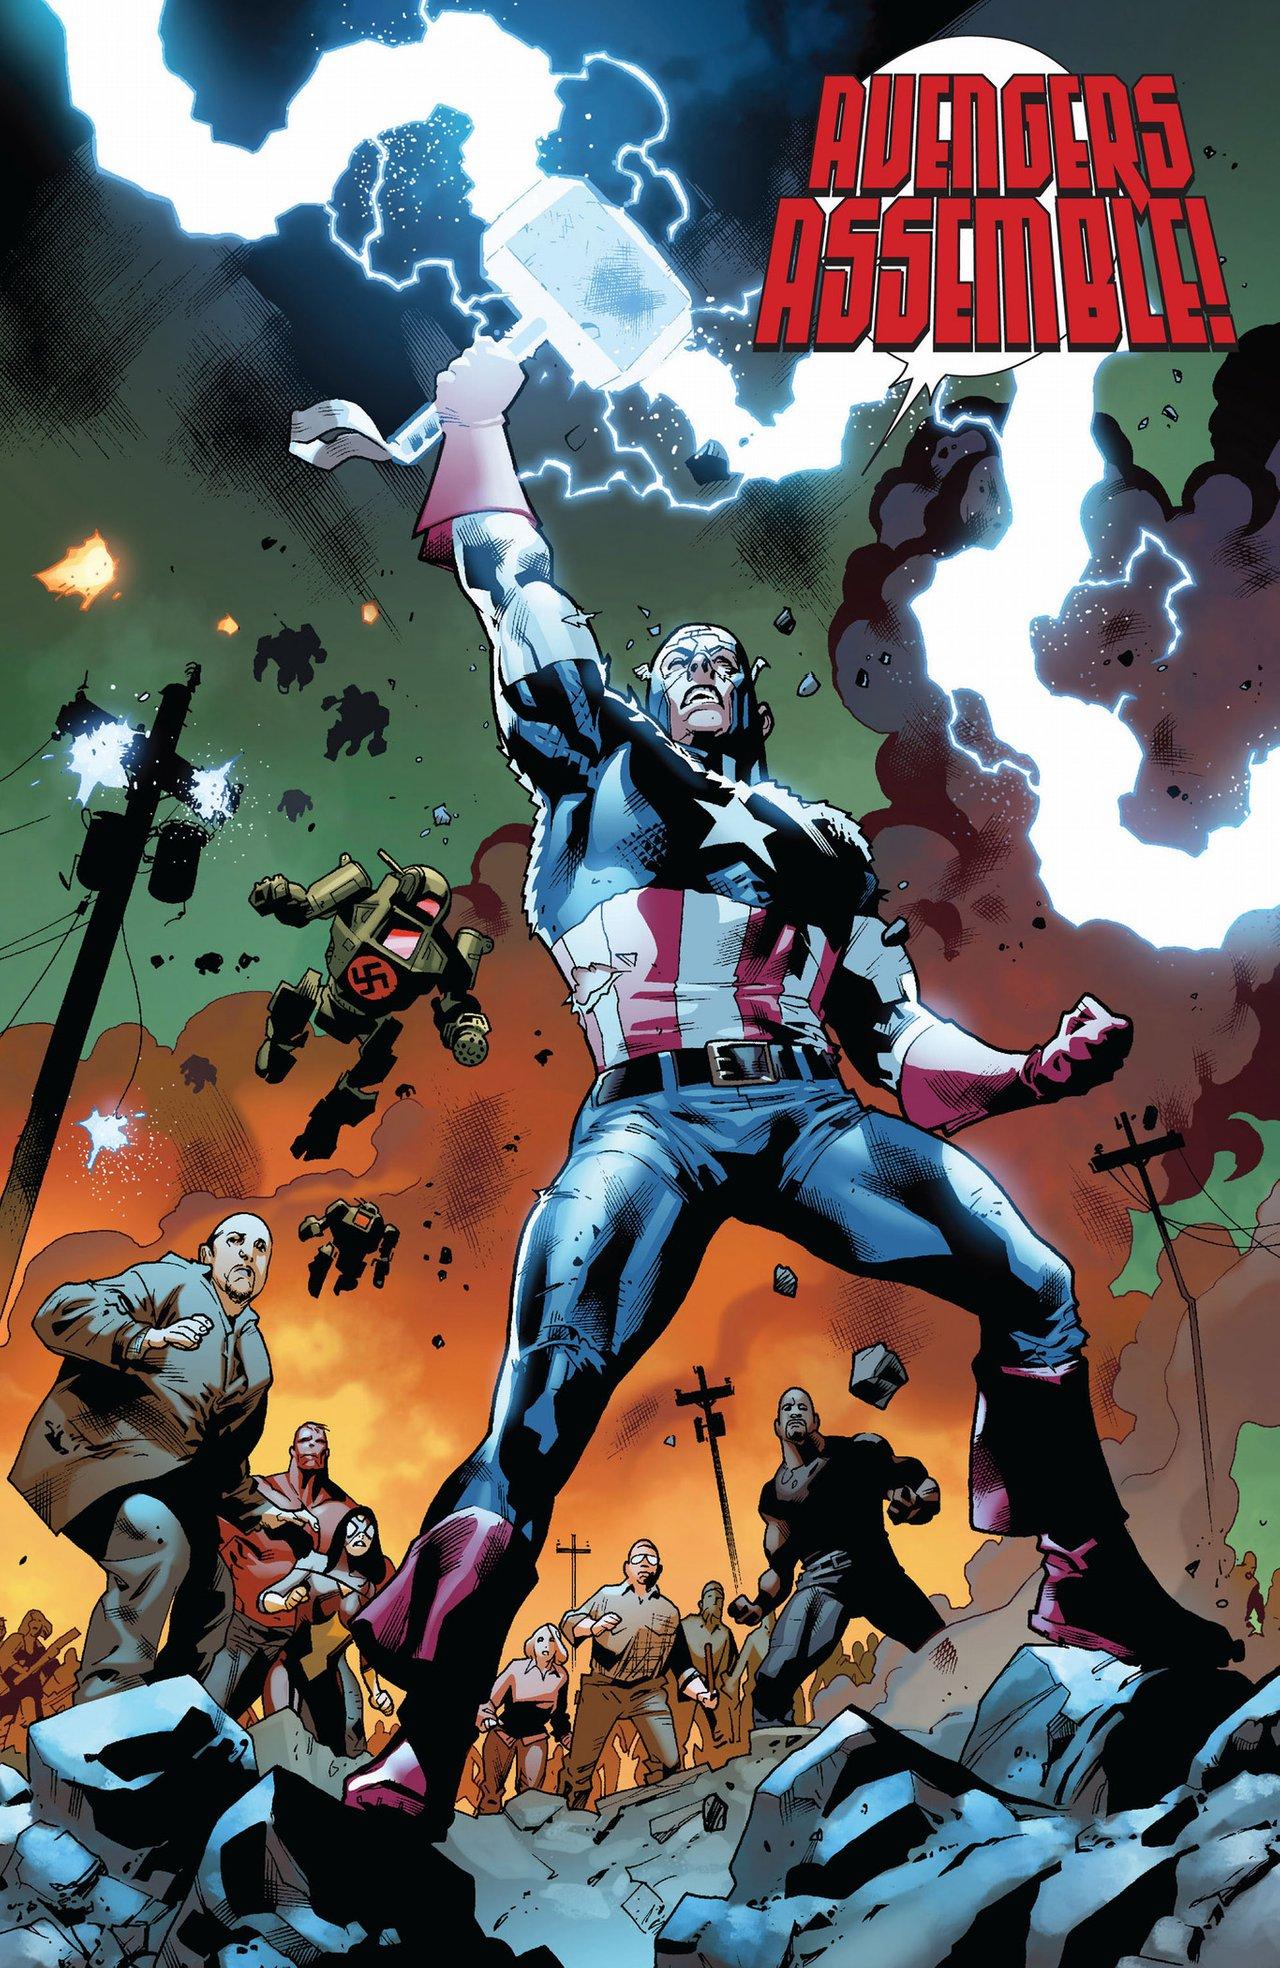 Will Captain America Finally Lift Thor's Hammer in Avengers: Endgame